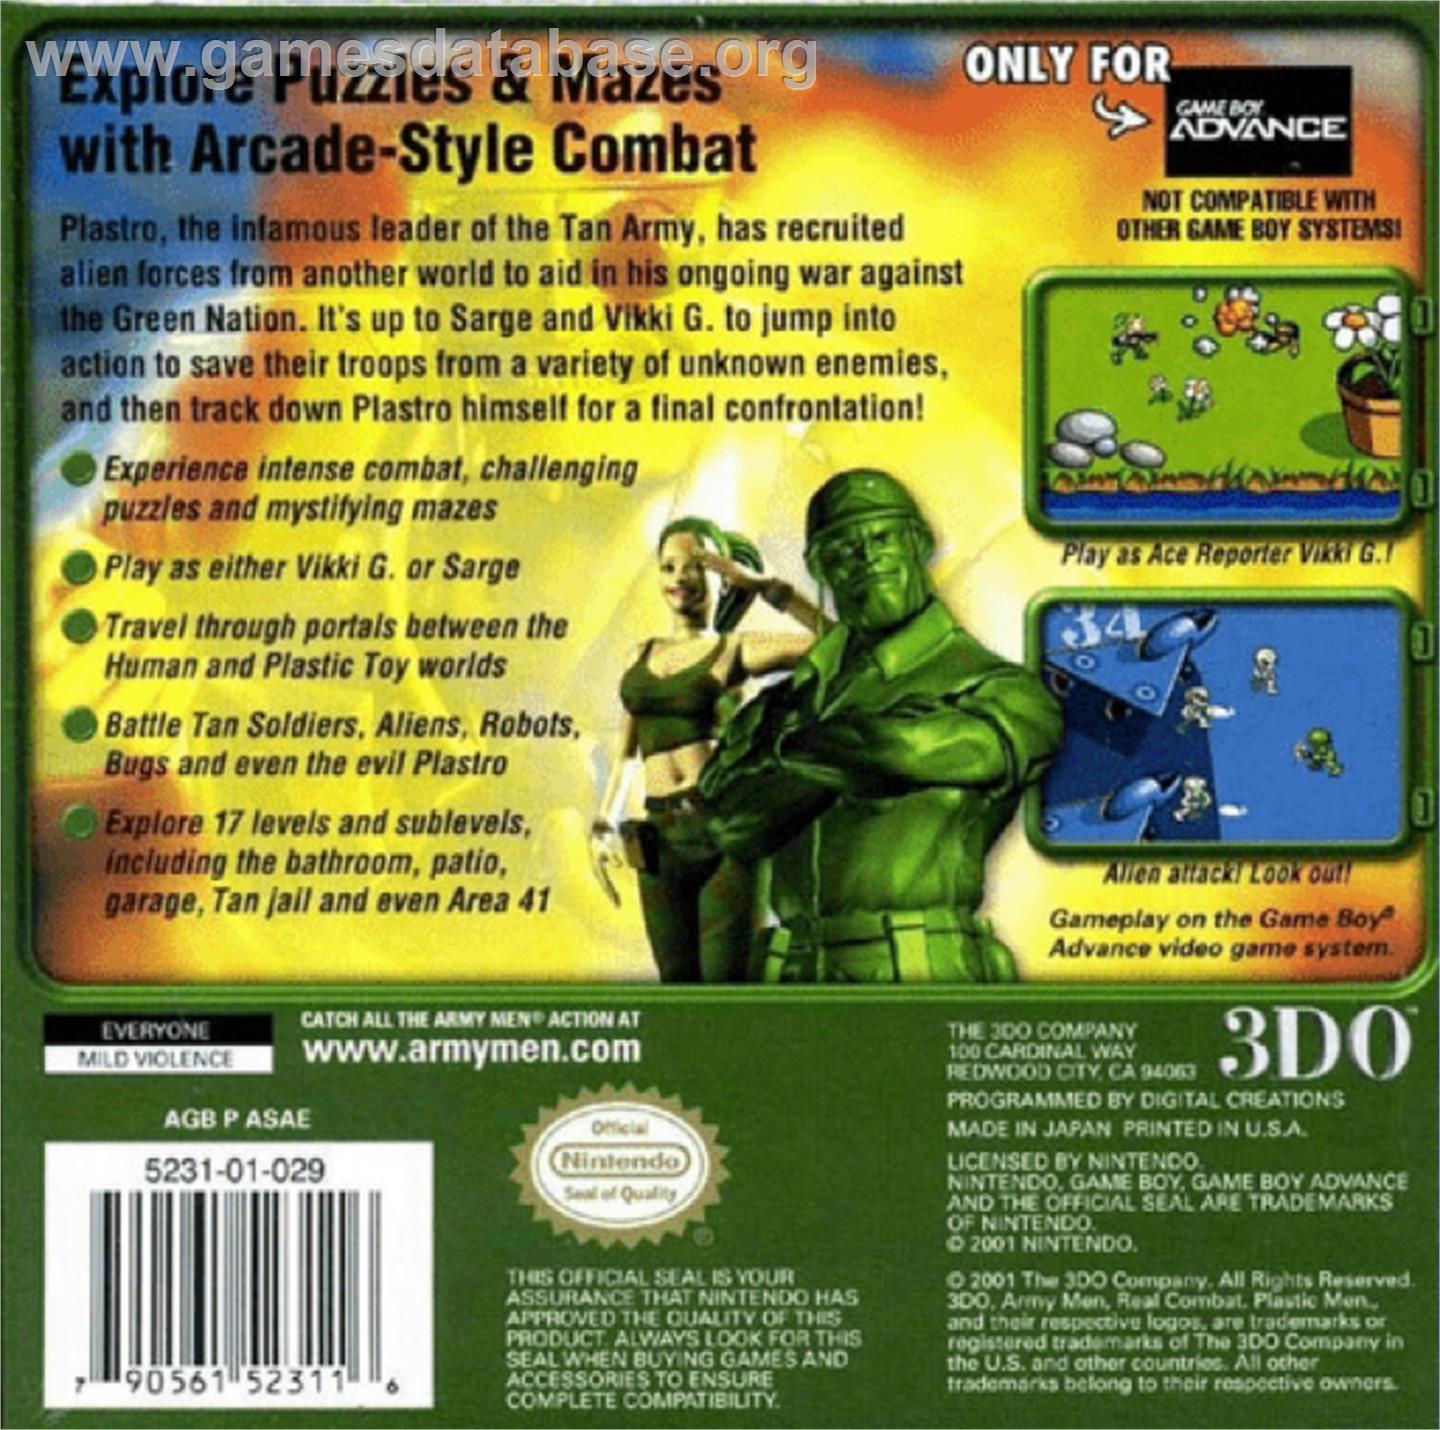 Army Men: Advance - Nintendo Game Boy Advance - Artwork - Box Back